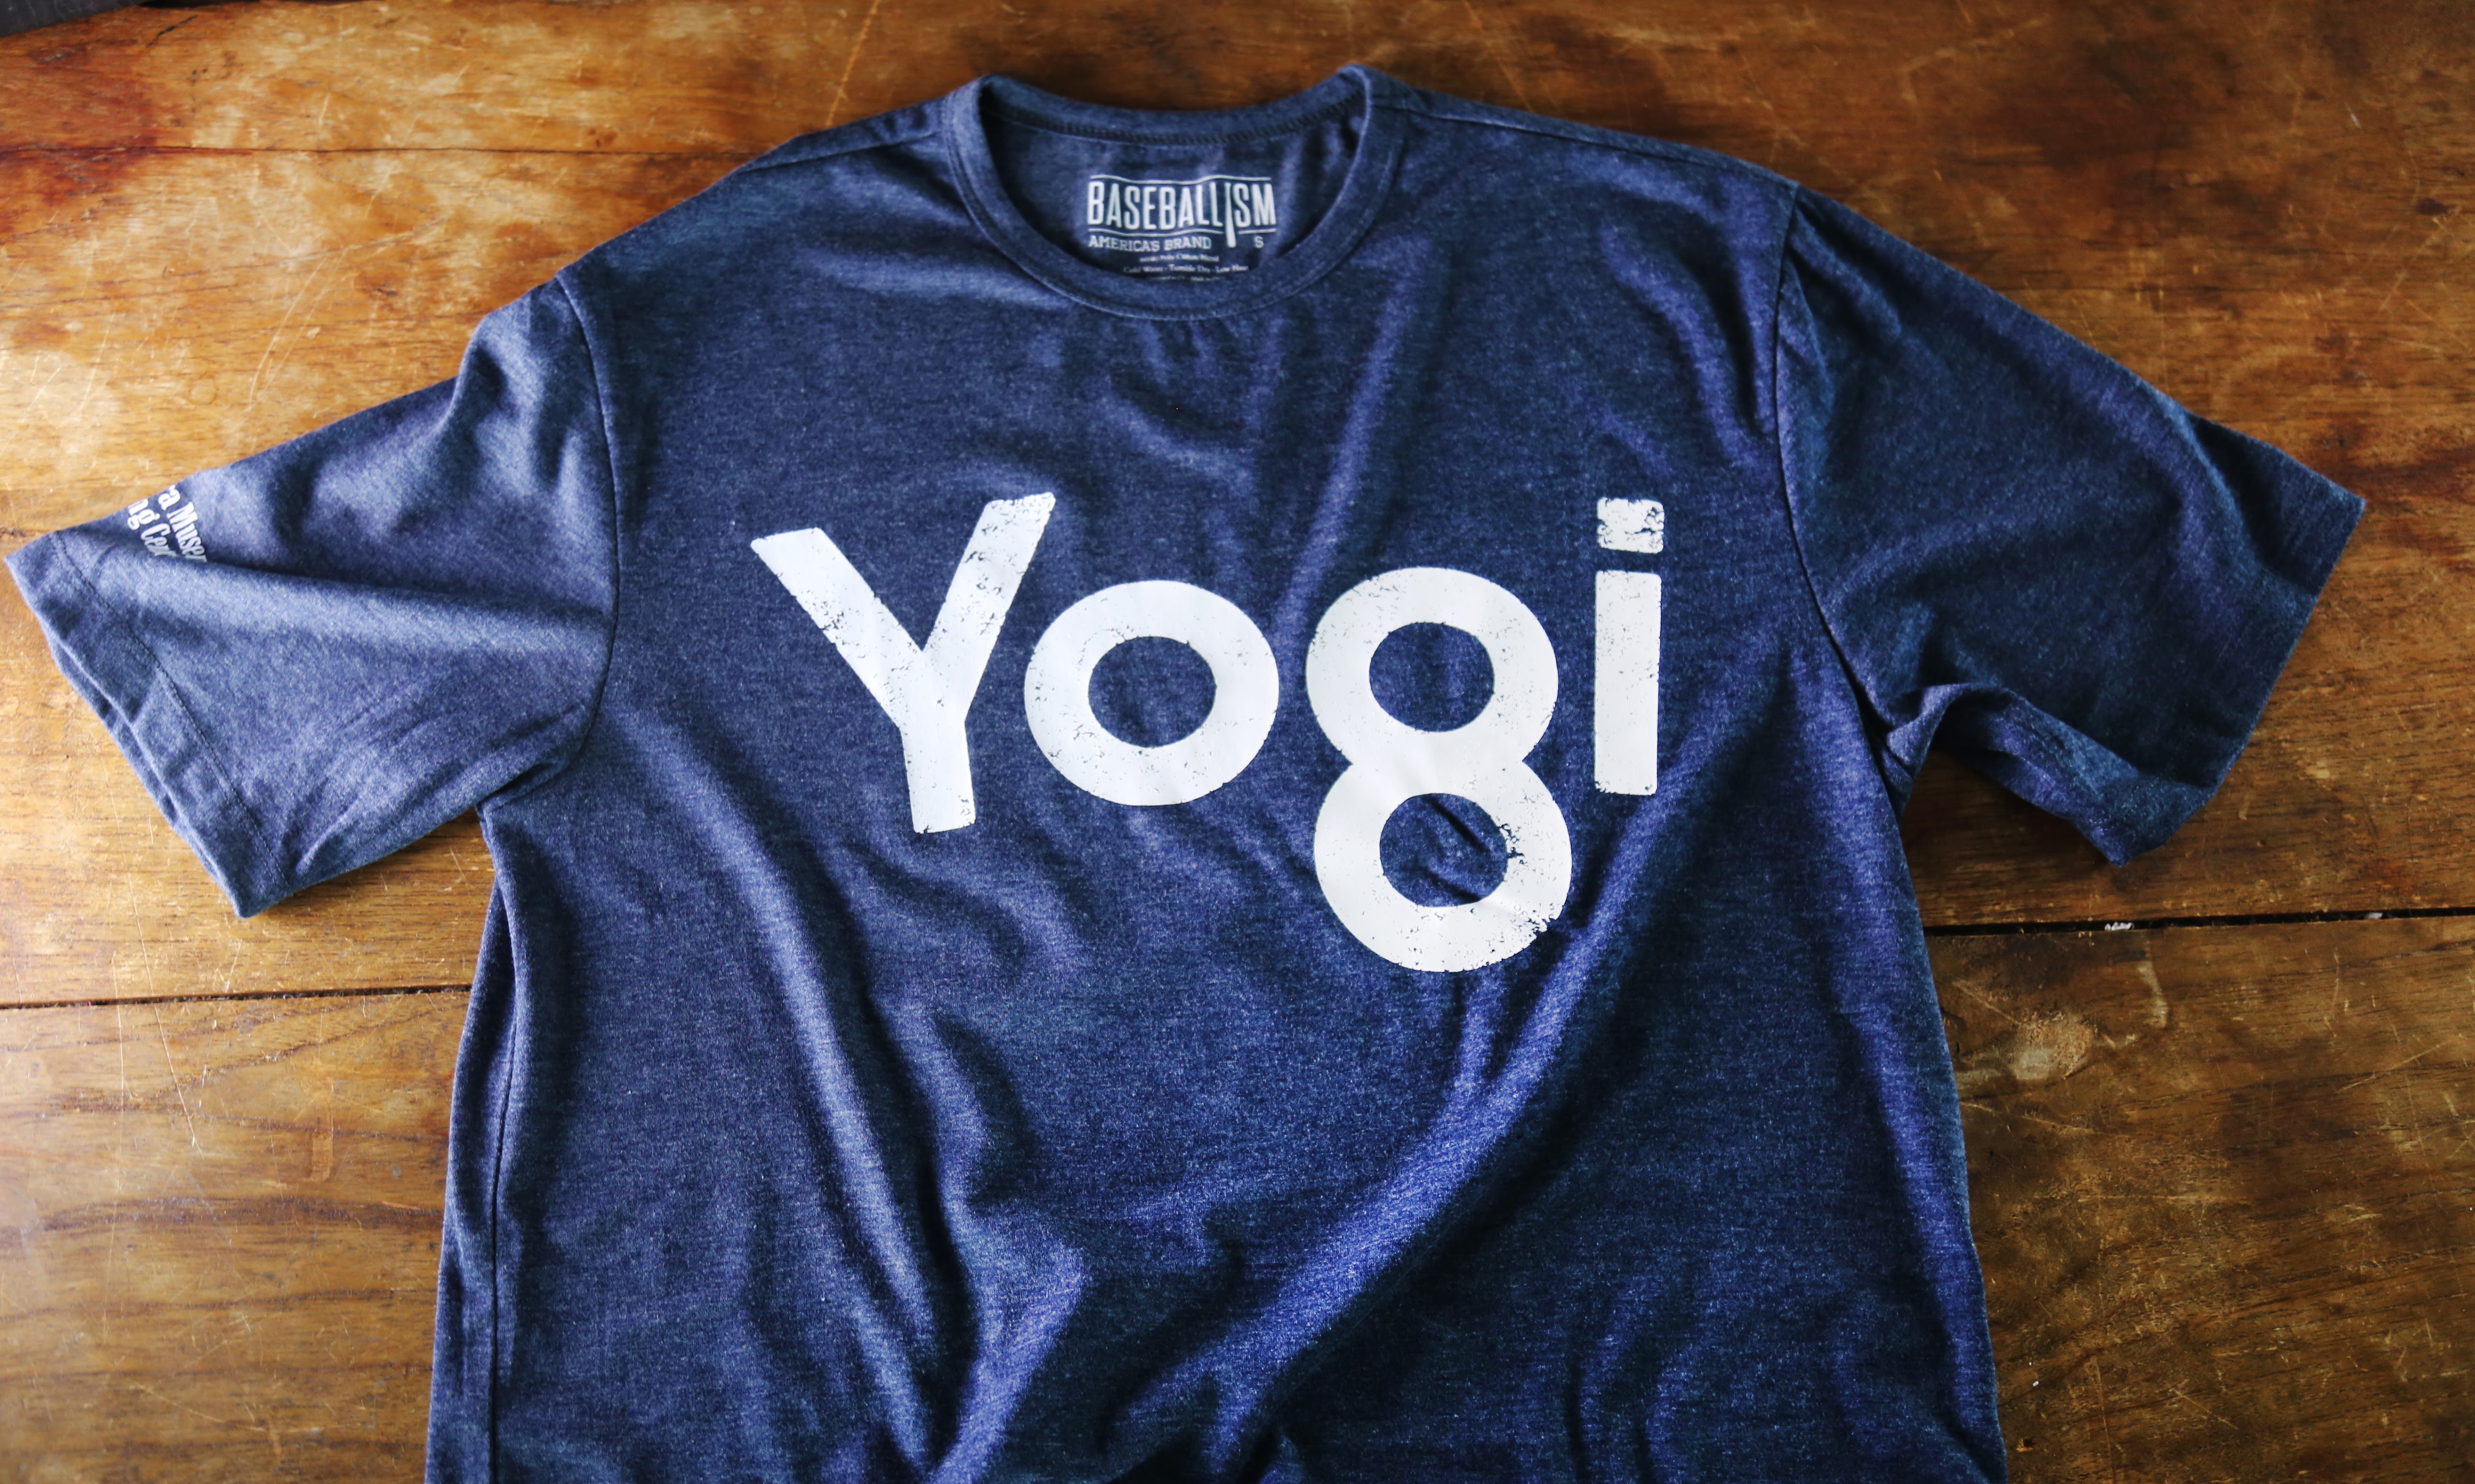 yogi berra jersey